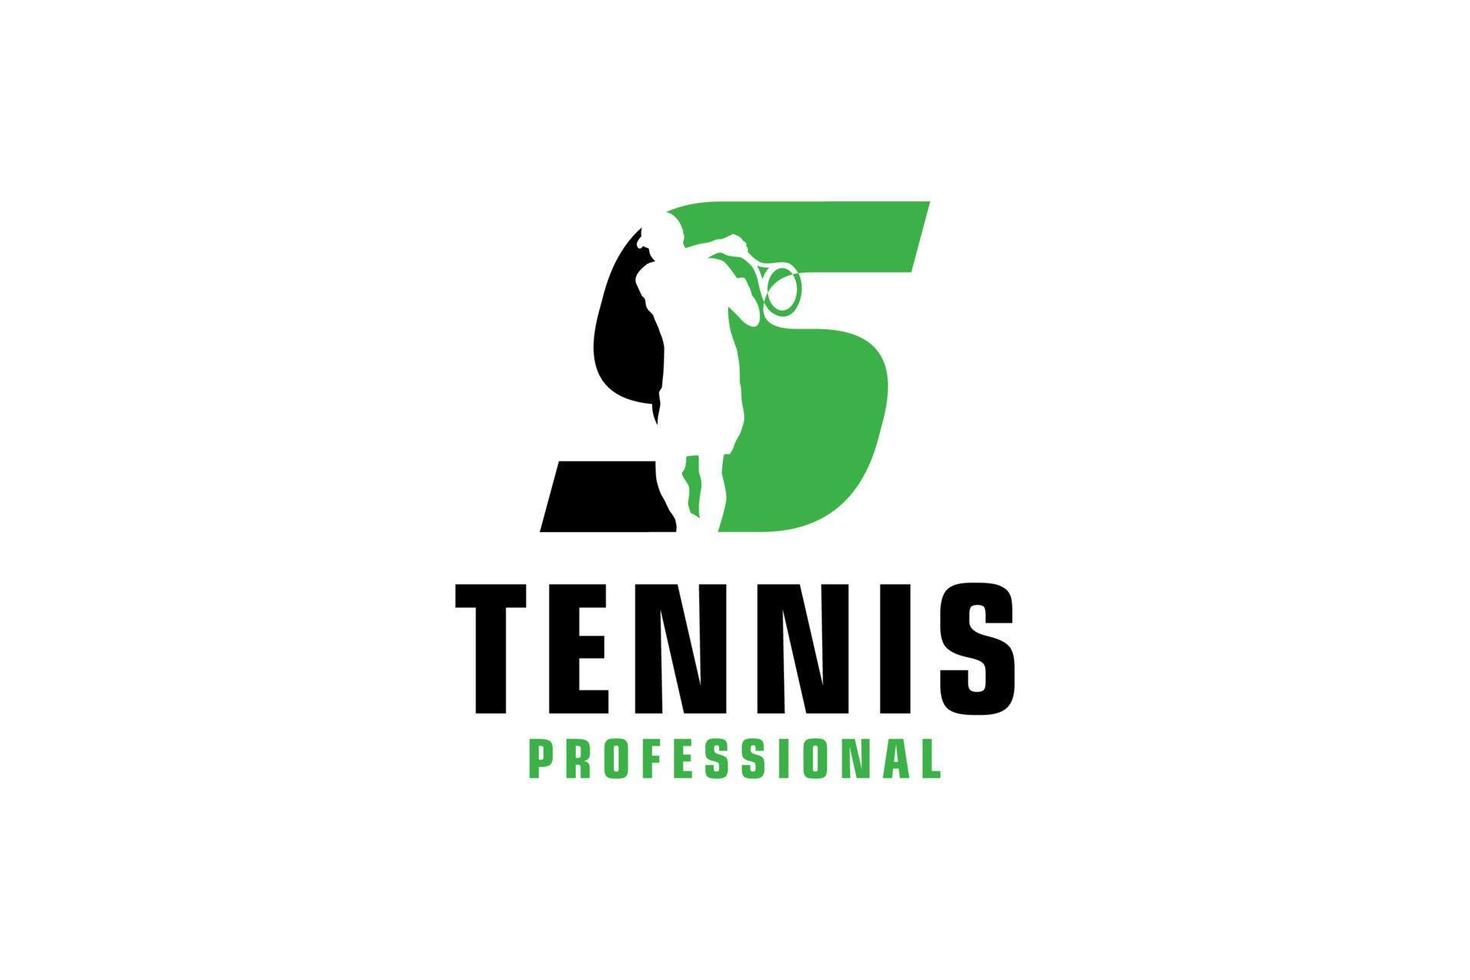 lettre s avec création de logo de silhouette de joueur de tennis. éléments de modèle de conception de vecteur pour l'équipe sportive ou l'identité d'entreprise.